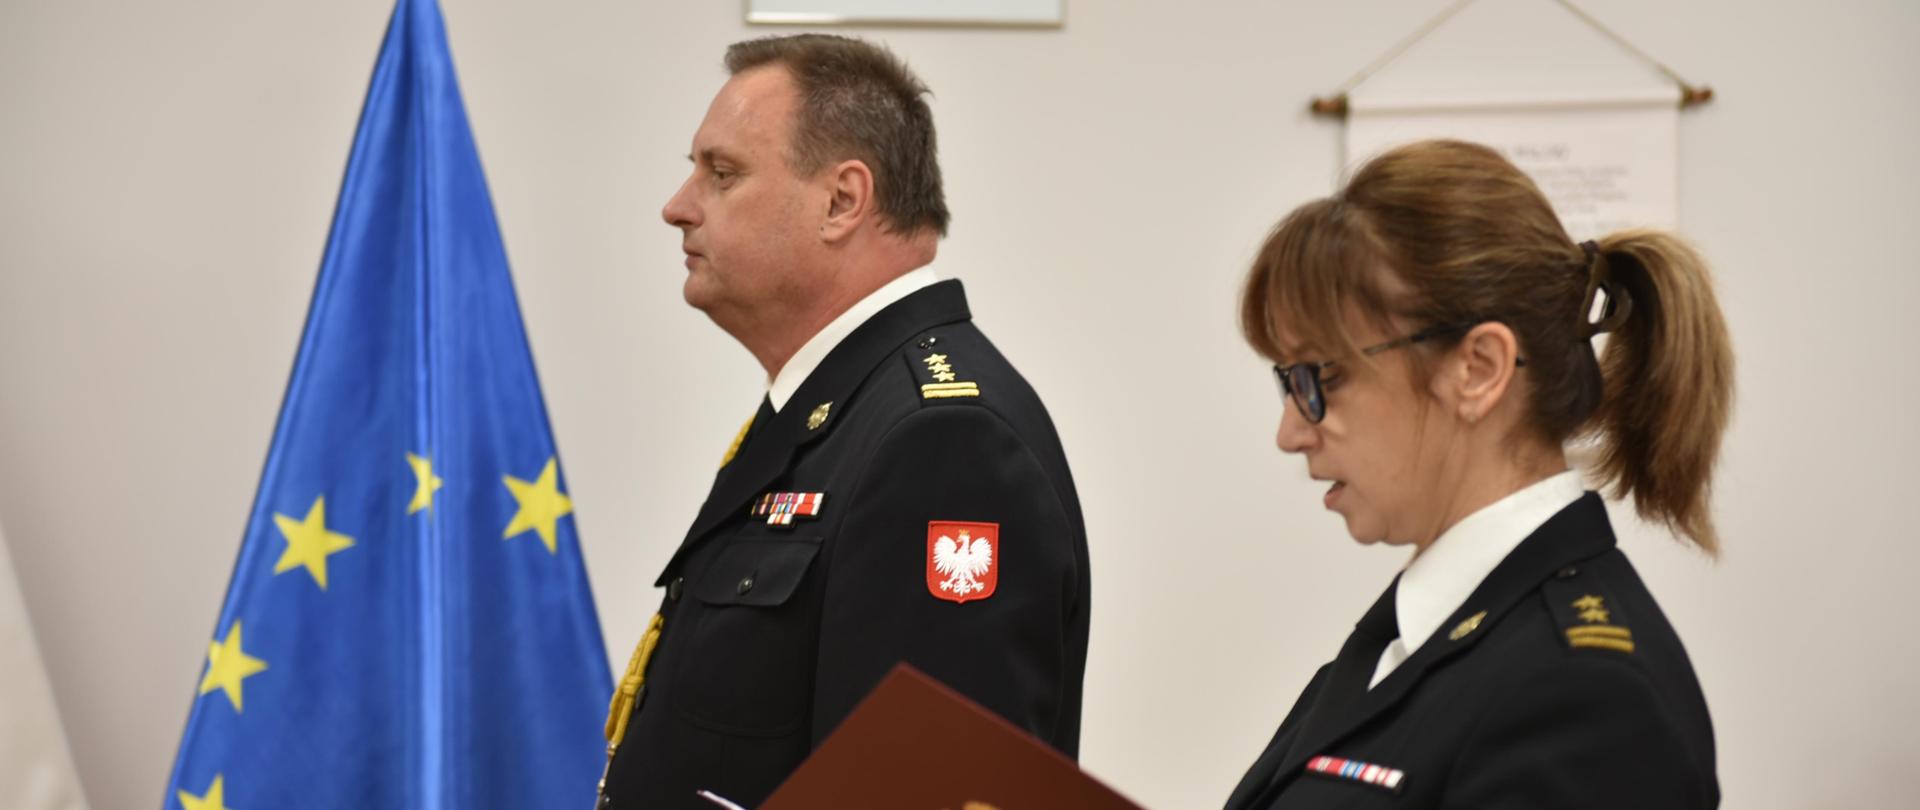 dwóje strażaków stojących obok siebie skierowanych w lewa stronę, funkcjonariuszka po prawej trzyma otwartą bordową teczkę na dokumenty, za nimi flagi polski i unii europejskiej